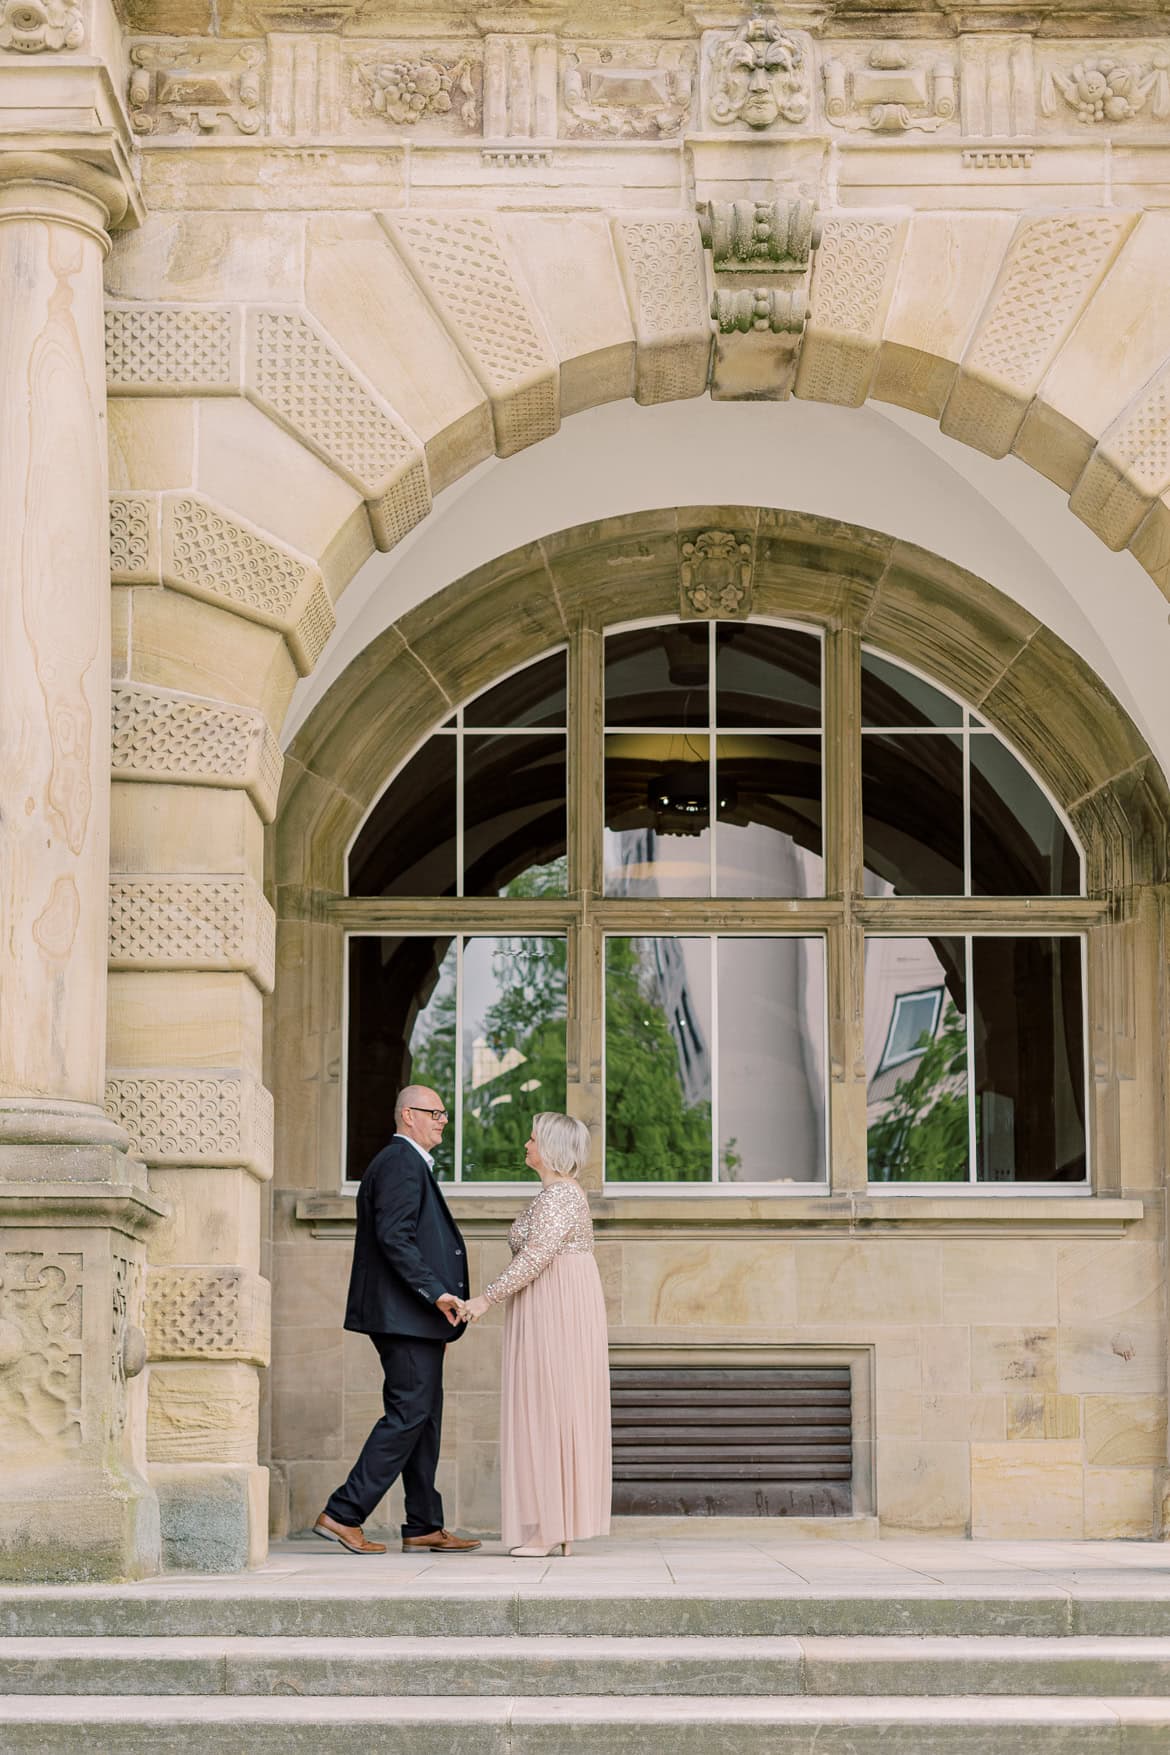 Zwei Fotografinnen, eine Verlobungssession - in Bielefeld